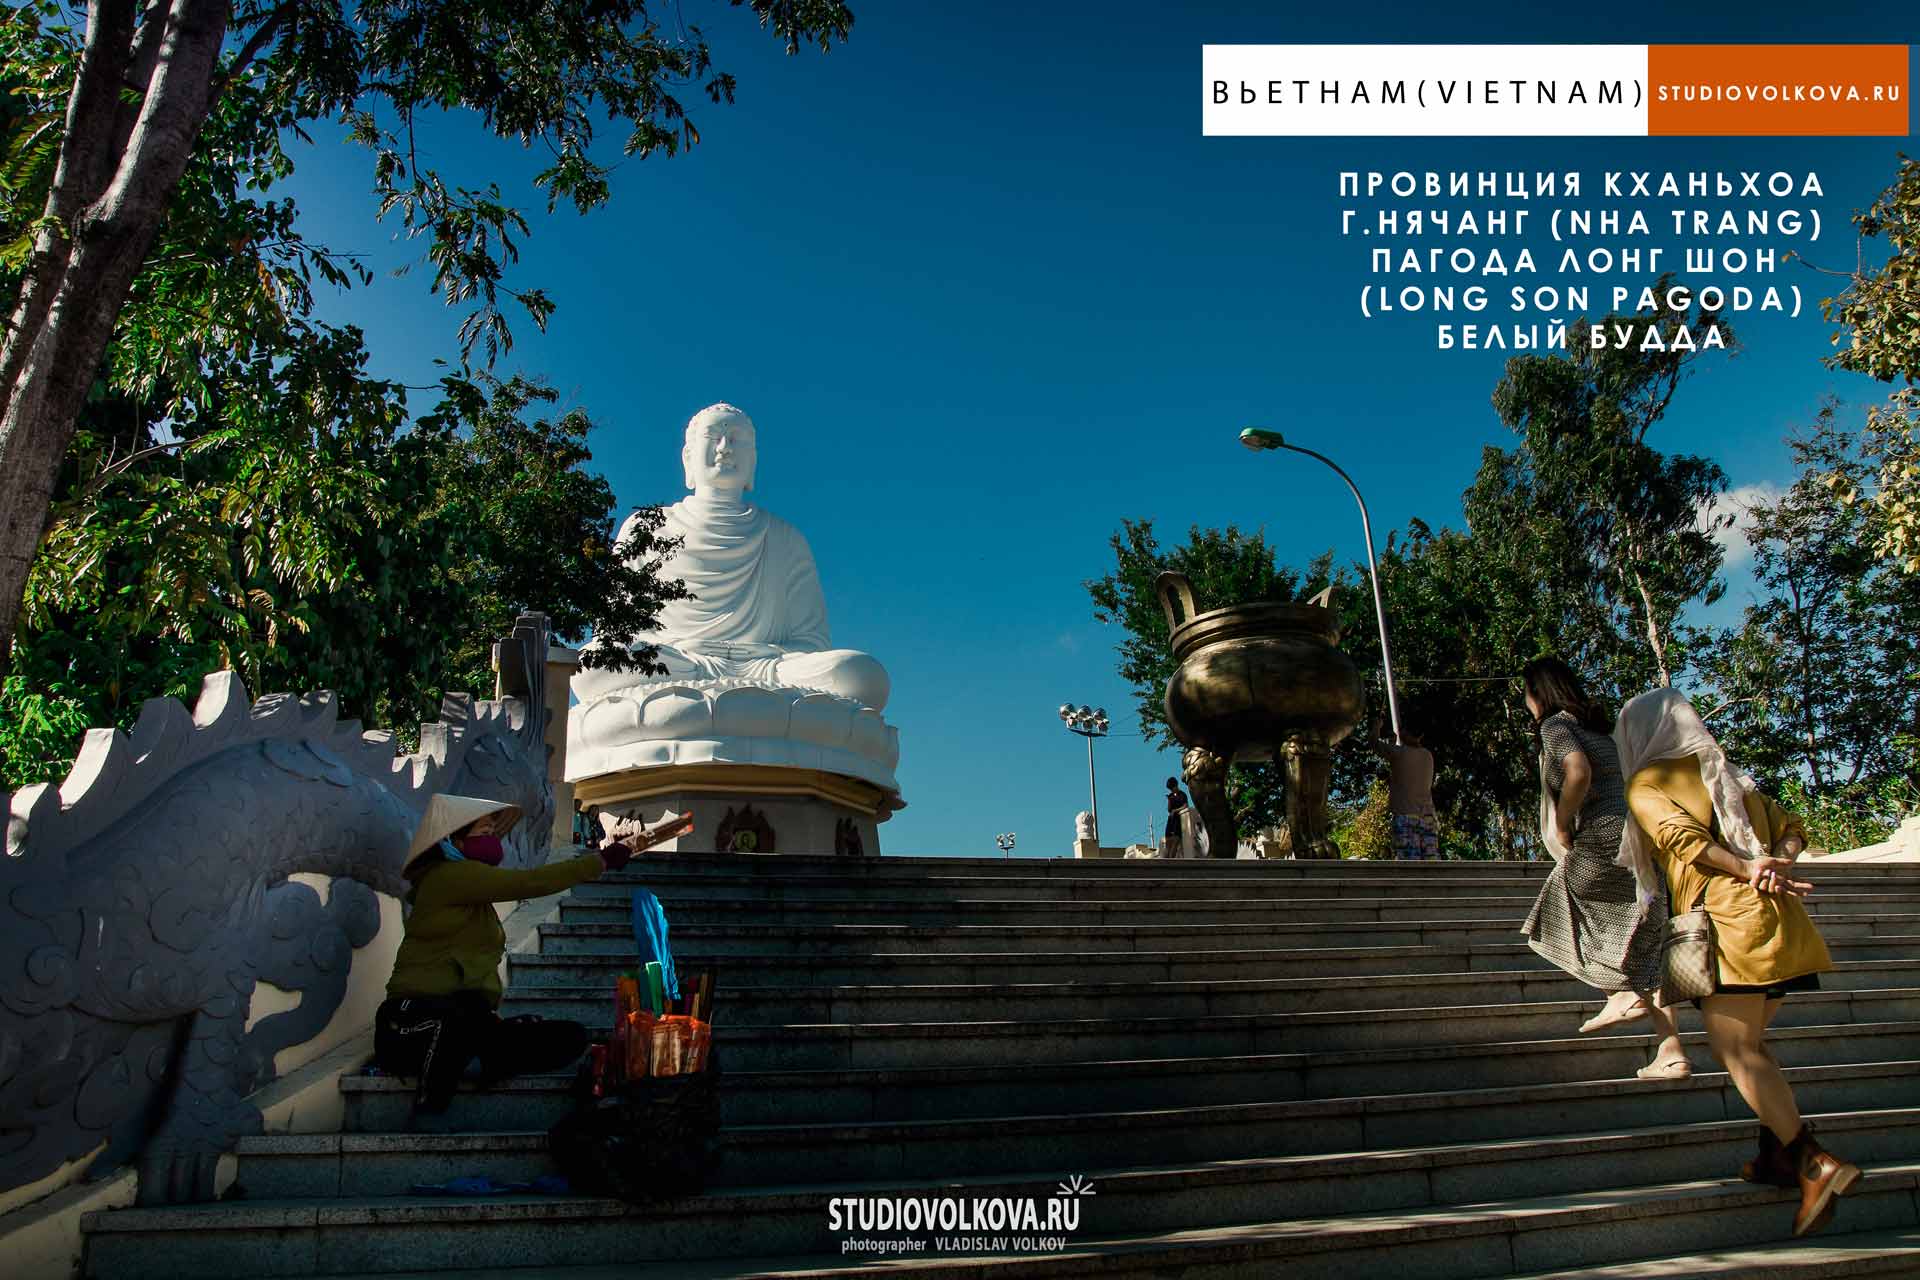 Белый Будда. Пагода Лонг Шон. г. Нячанг (Nha Trang). фотограф Владислав ВОЛКОВ